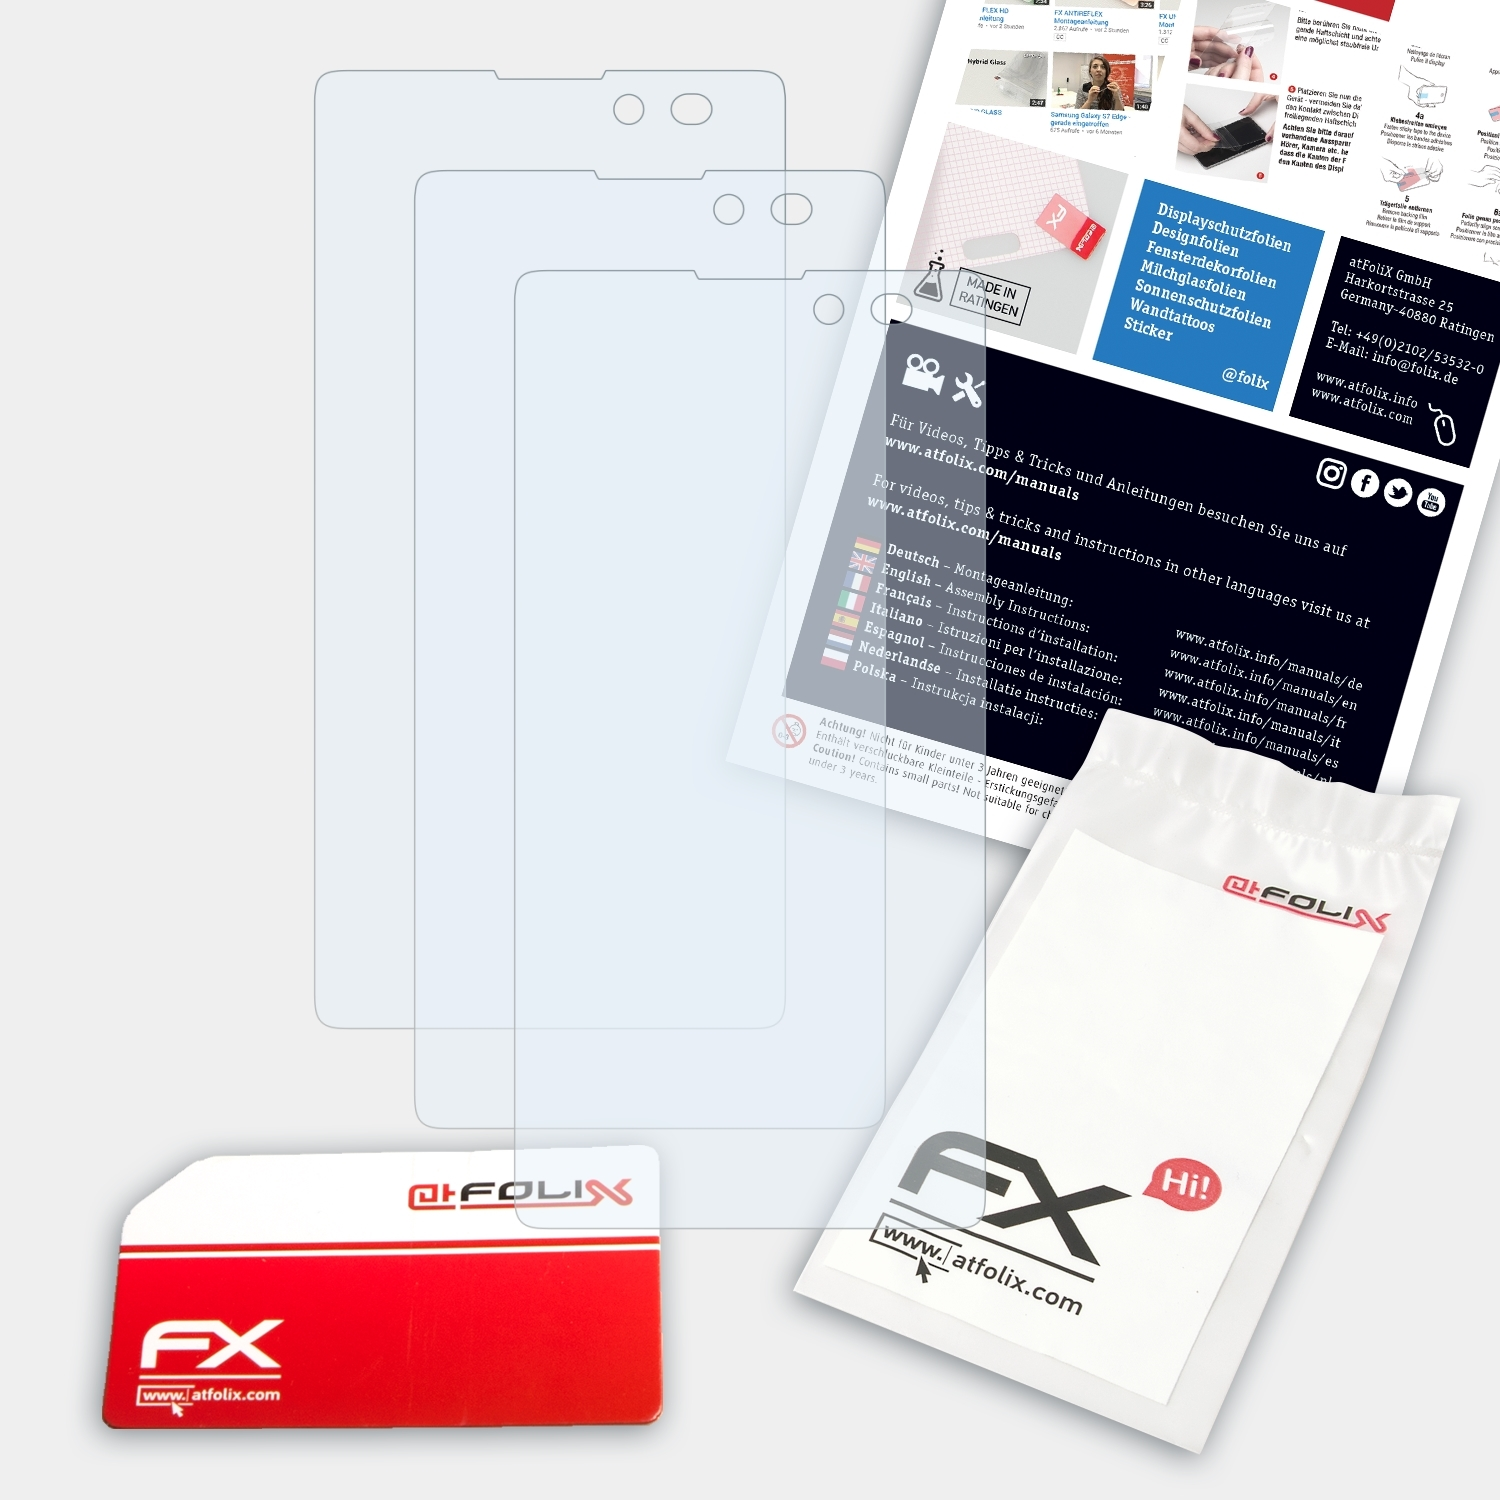 FX-Clear 3x Displayschutz(für Archos ATFOLIX Neon) Neon/50b 50